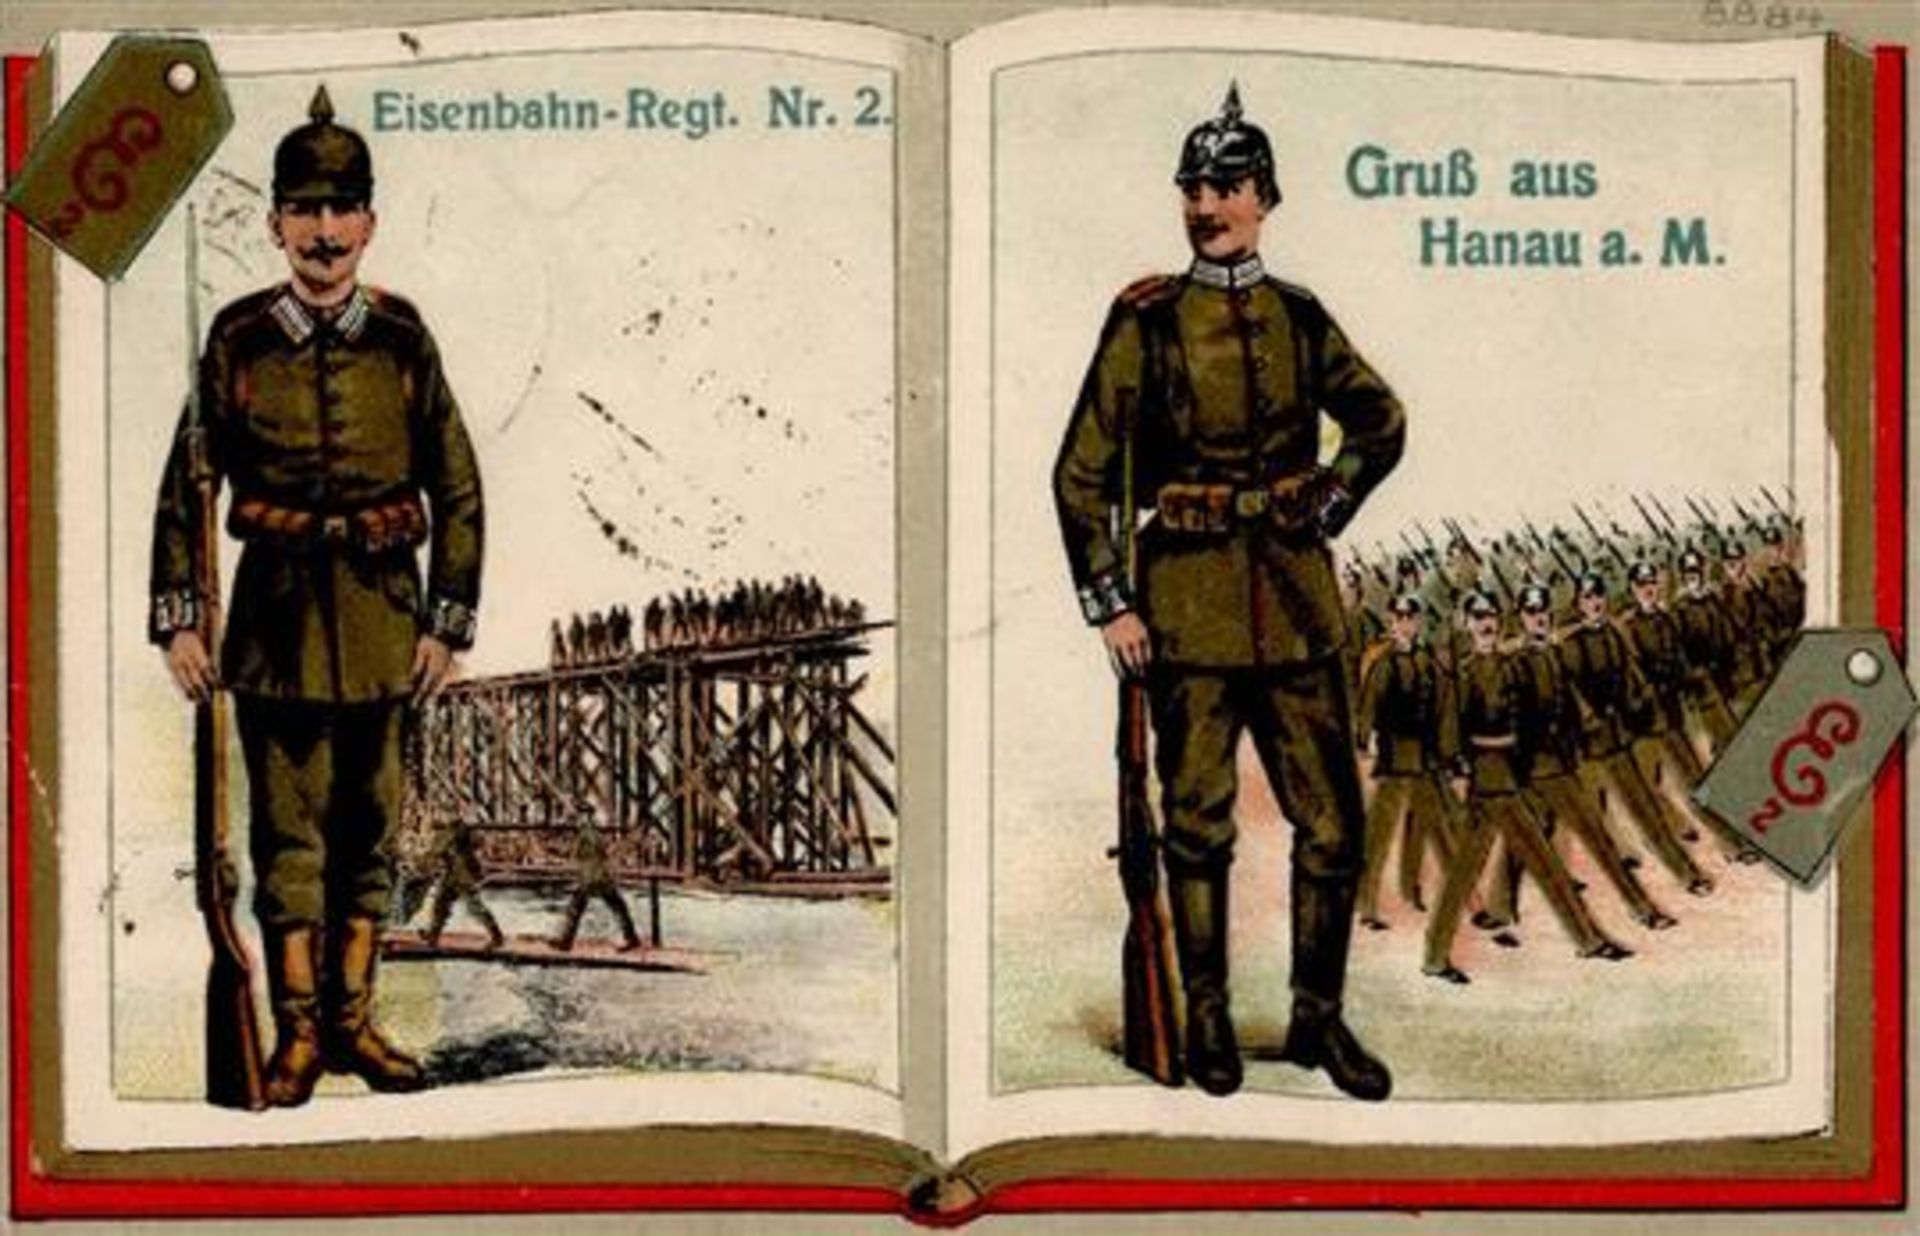 Regiment Nr. 2 Hanau (6450) Eisenbahn Regt. 1918 Präge-Karte I-II